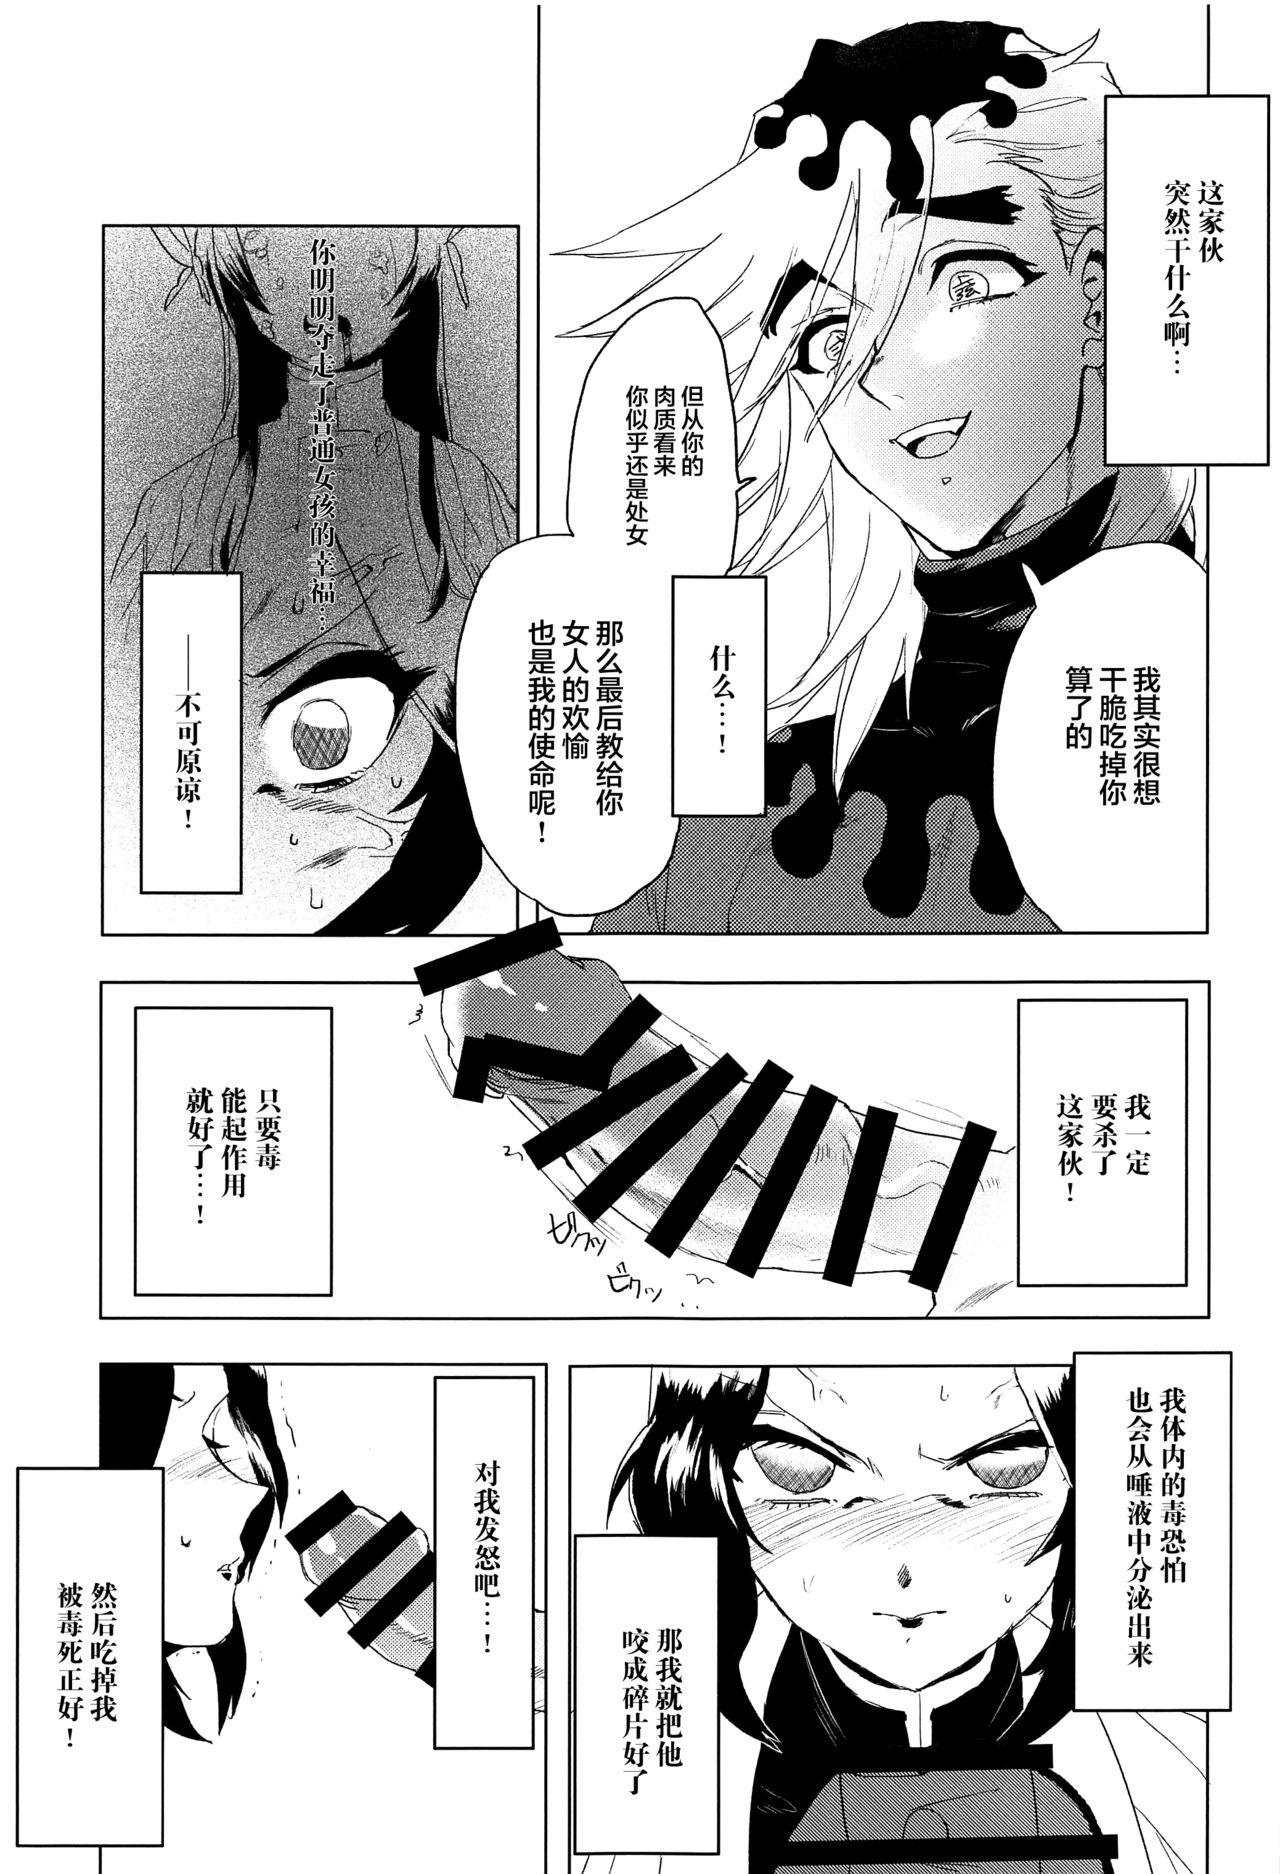 Couch Mushibashira Zecchou Kairaku Shugou Acme Jigoku - Kimetsu no yaiba | demon slayer Blackmail - Page 4